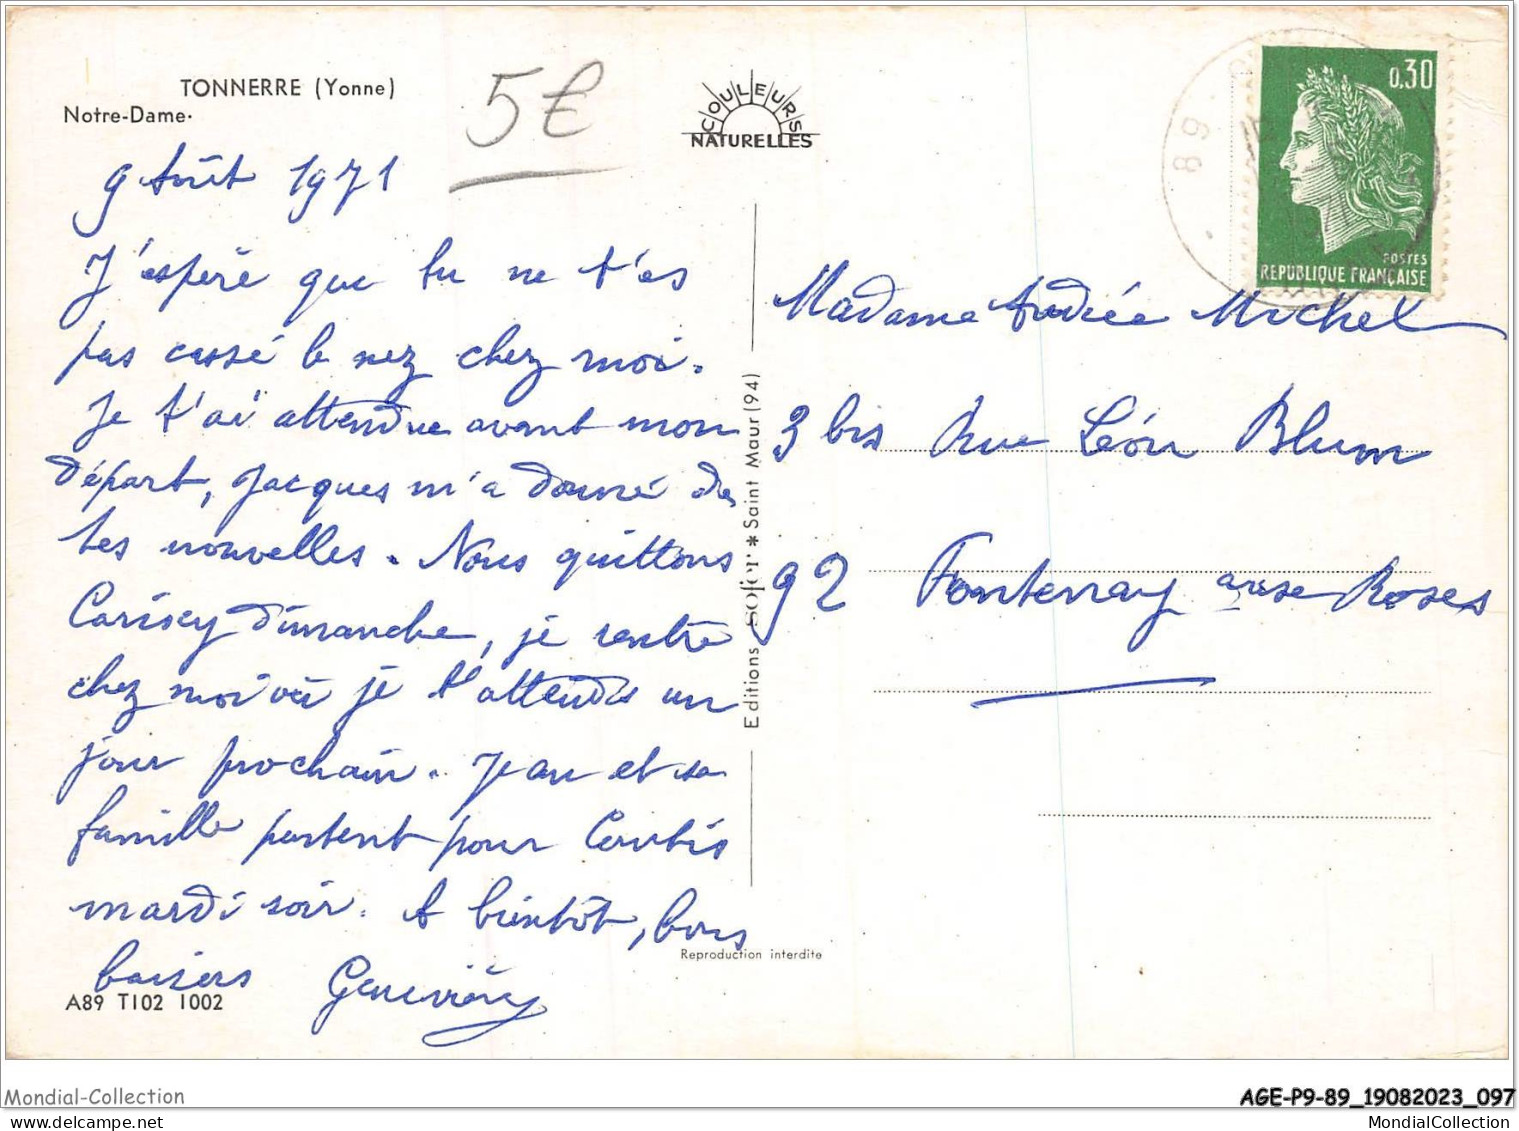 AGEP9-89-0861 - TONNERRE - Yonne - Notre-dame - Tonnerre